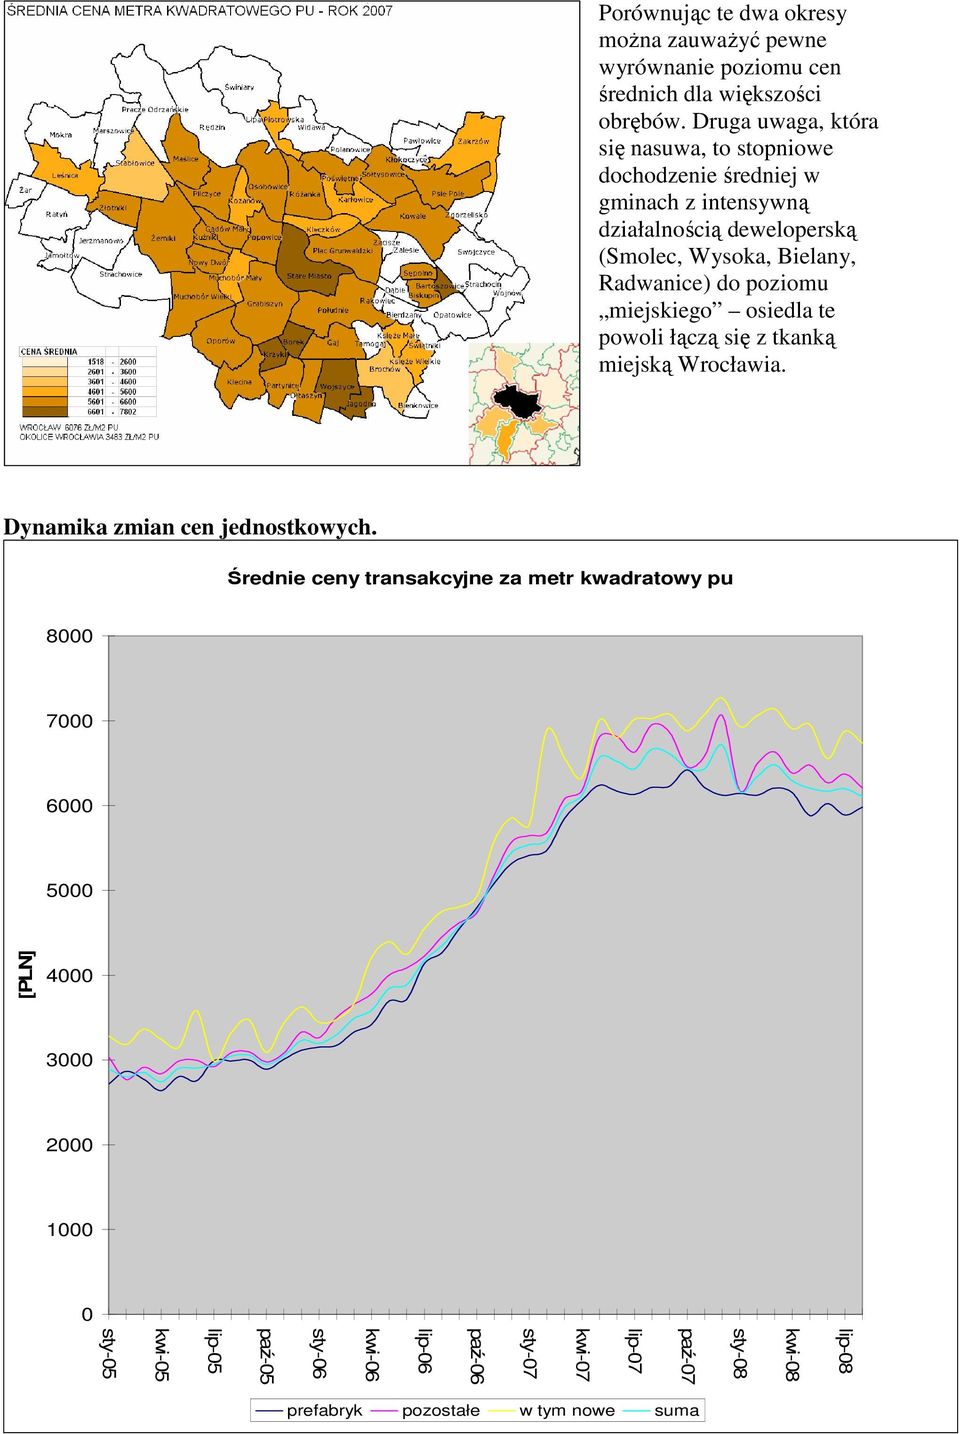 Radwanice) do poziomu miejskiego osiedla te powoli łączą się z tkanką miejską Wrocławia. Dynamika zmian cen jednostkowych.